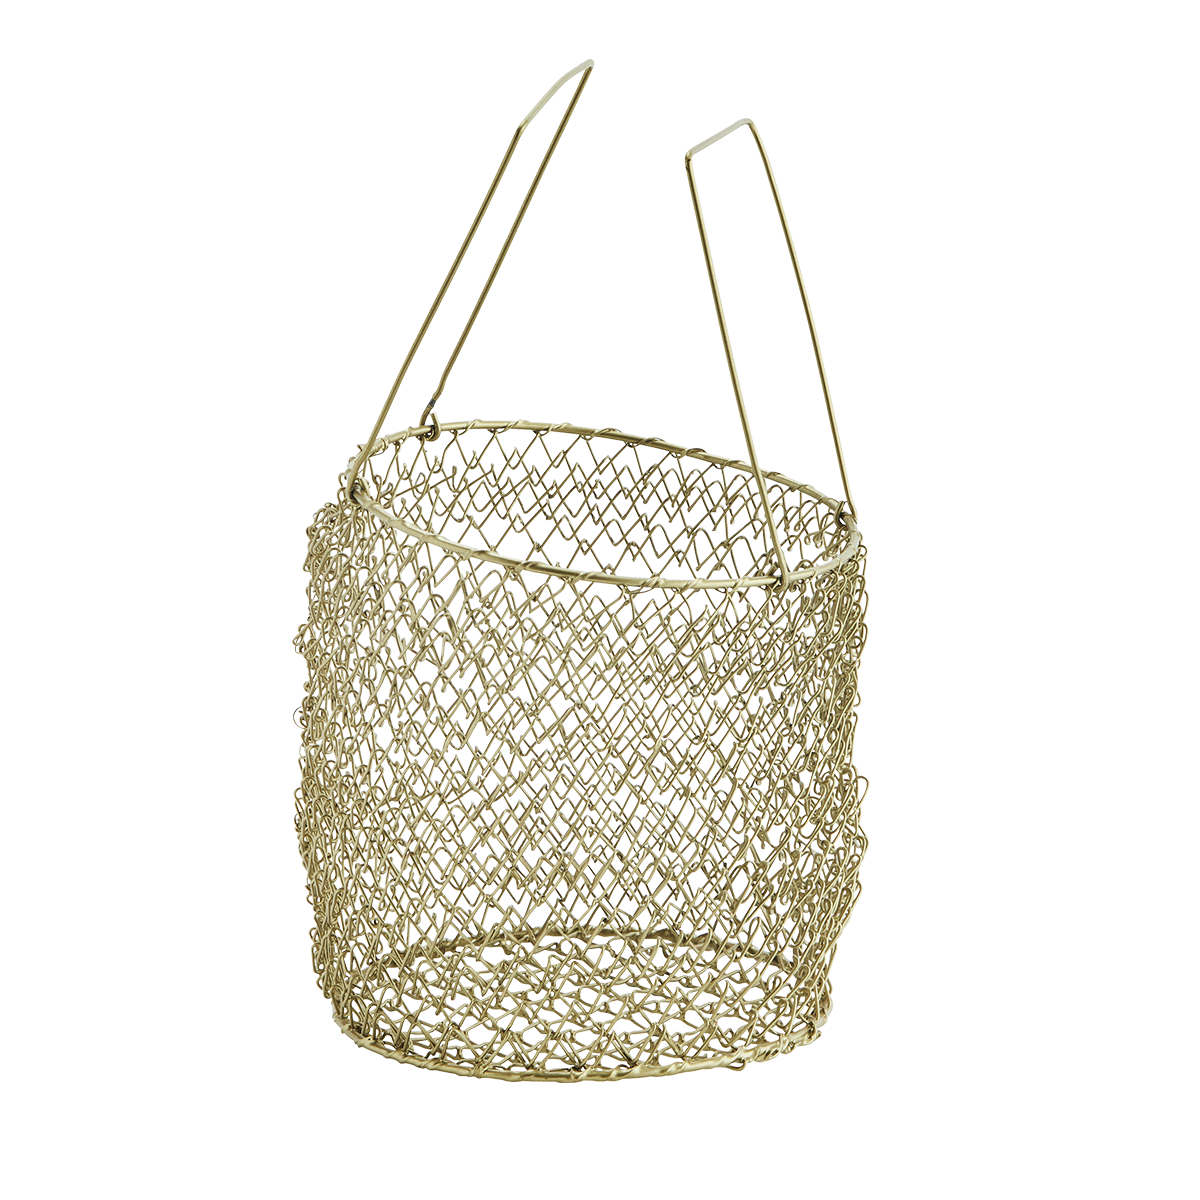 Iron wire basket w/ handles